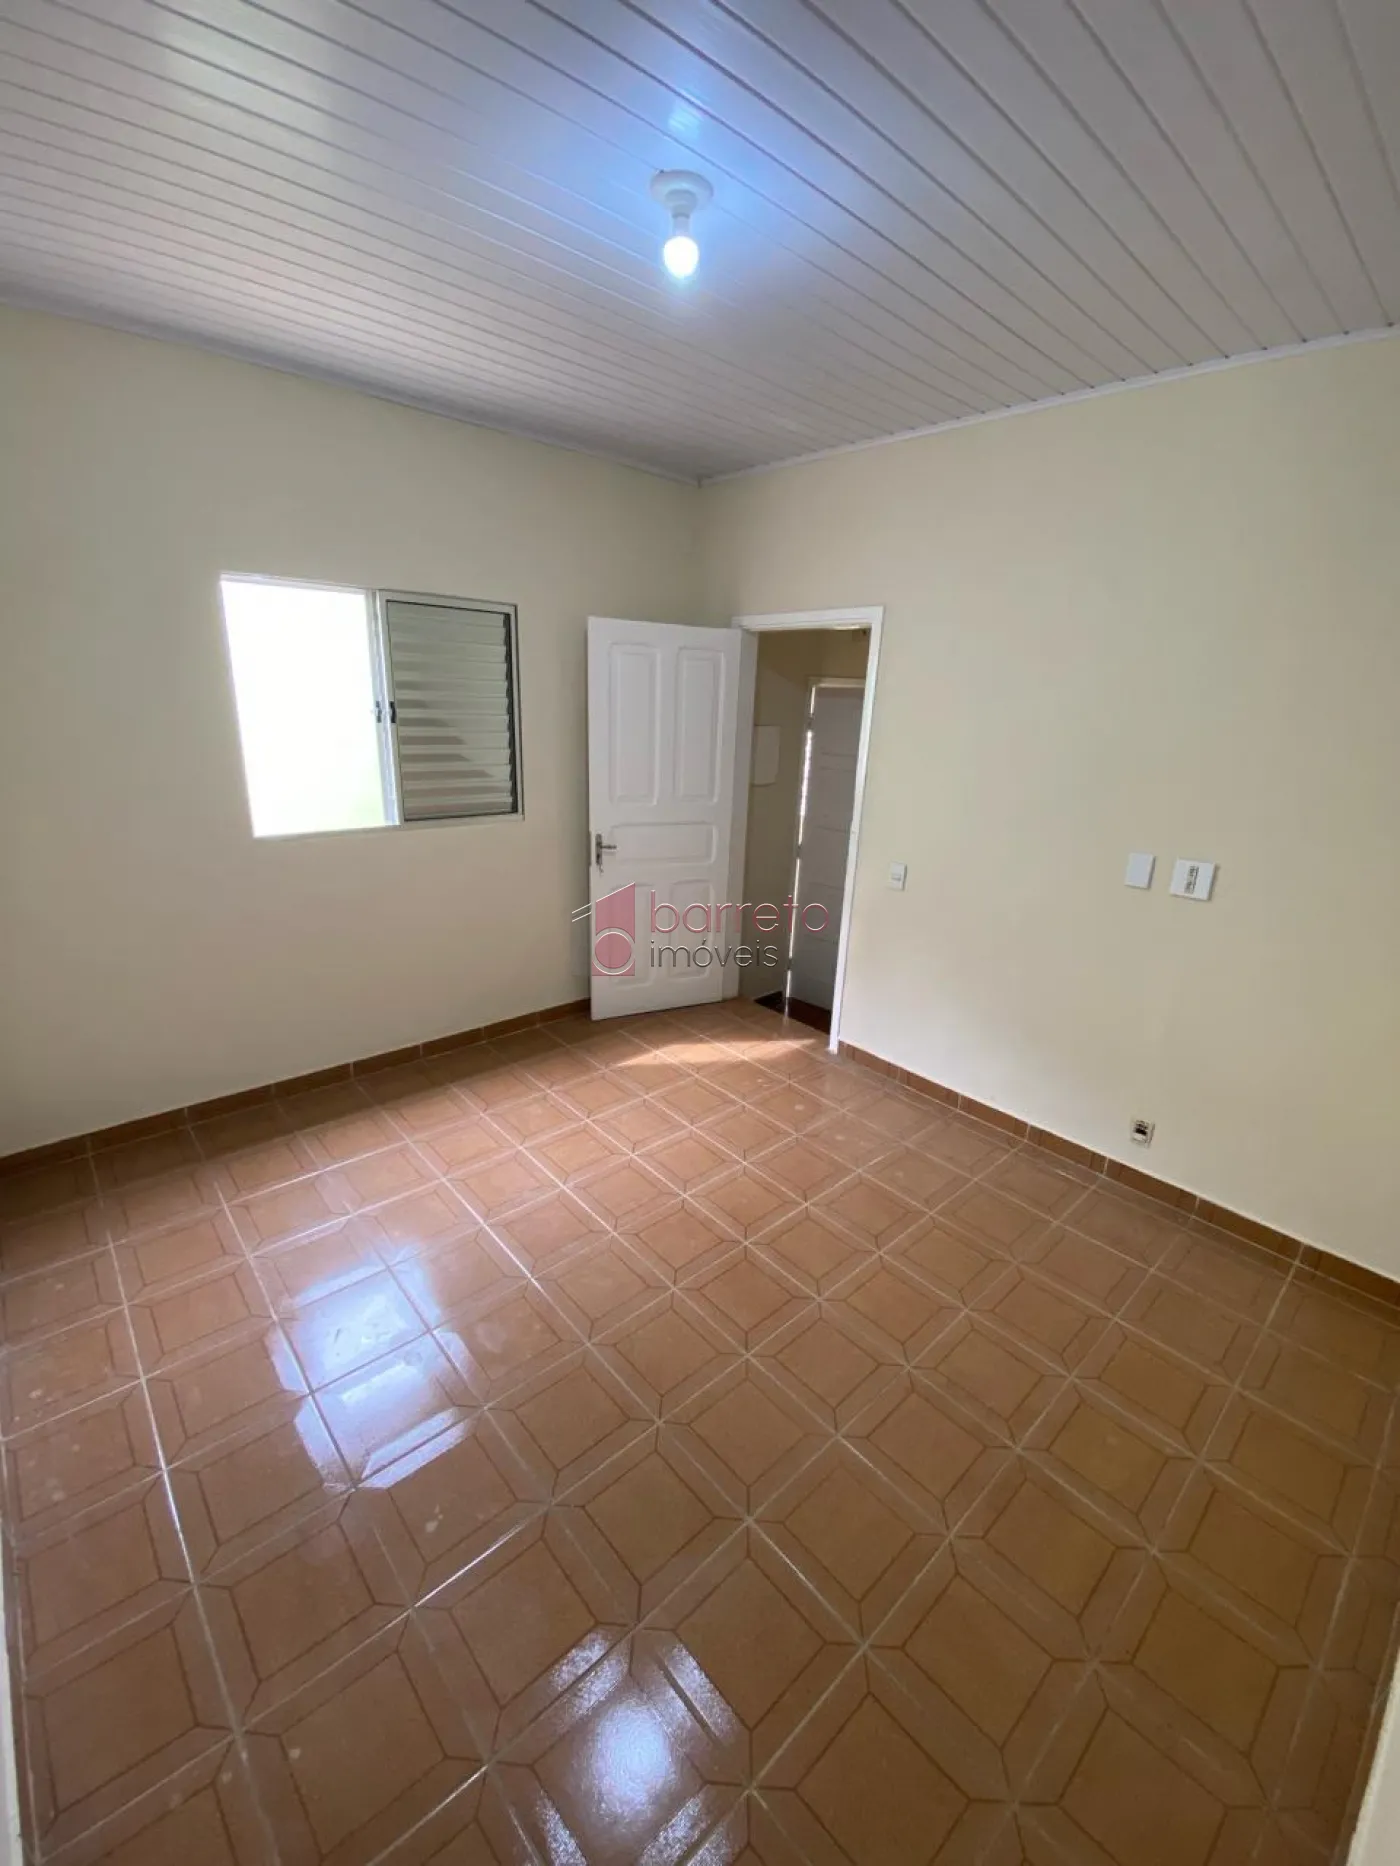 Comprar Casa / Térrea em Jundiaí R$ 668.000,00 - Foto 17